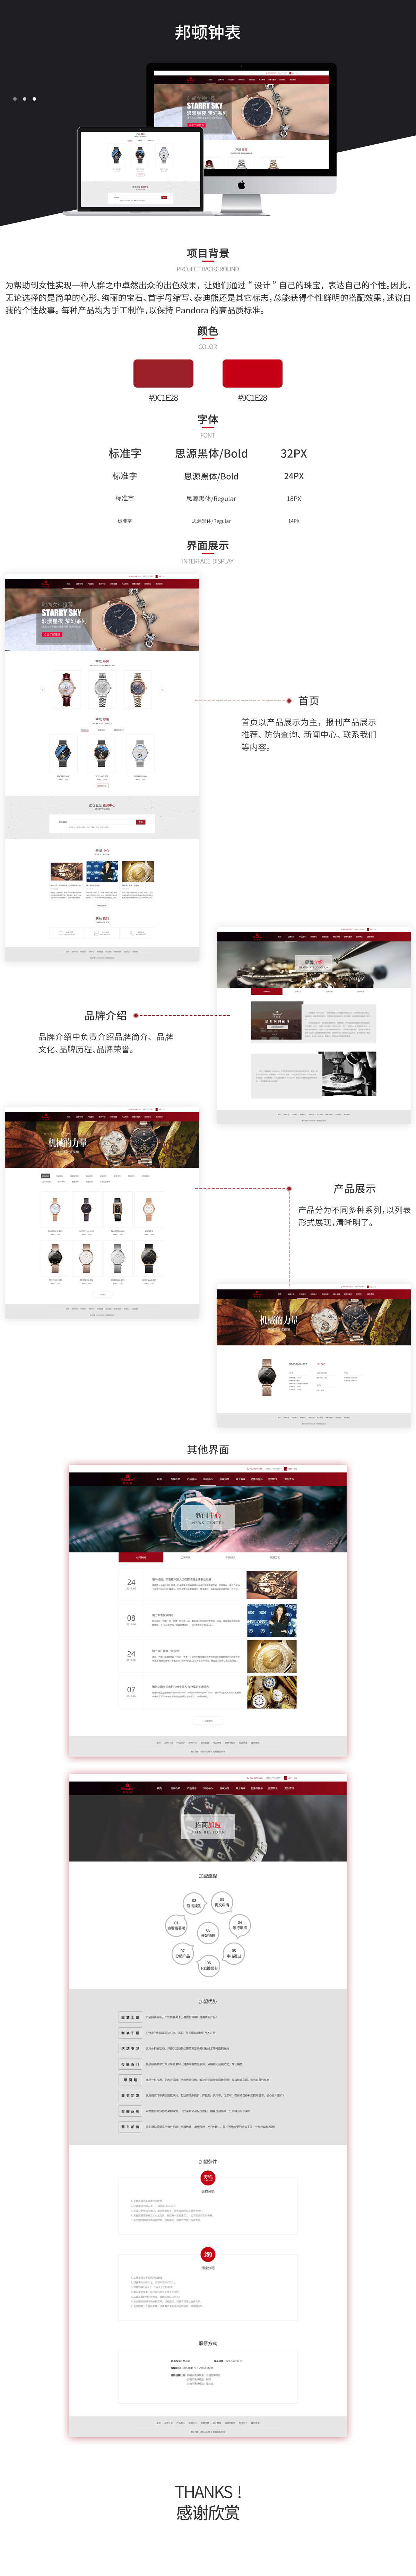 广州邦顿腕表有限公司网站案例